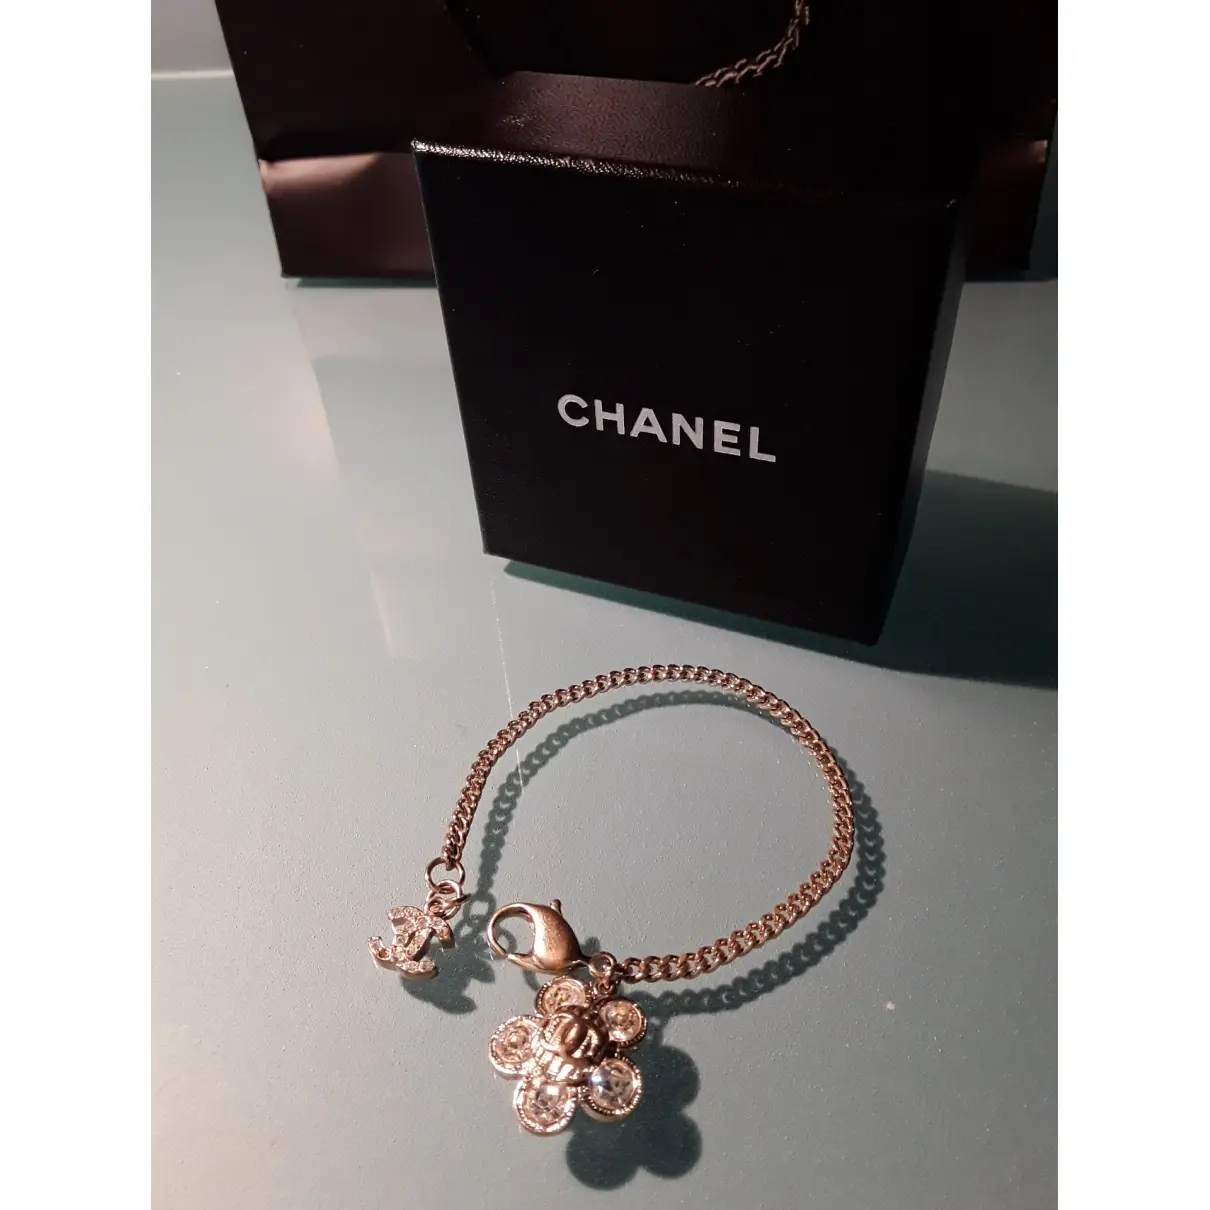 Chanel Camélia bracelet for sale